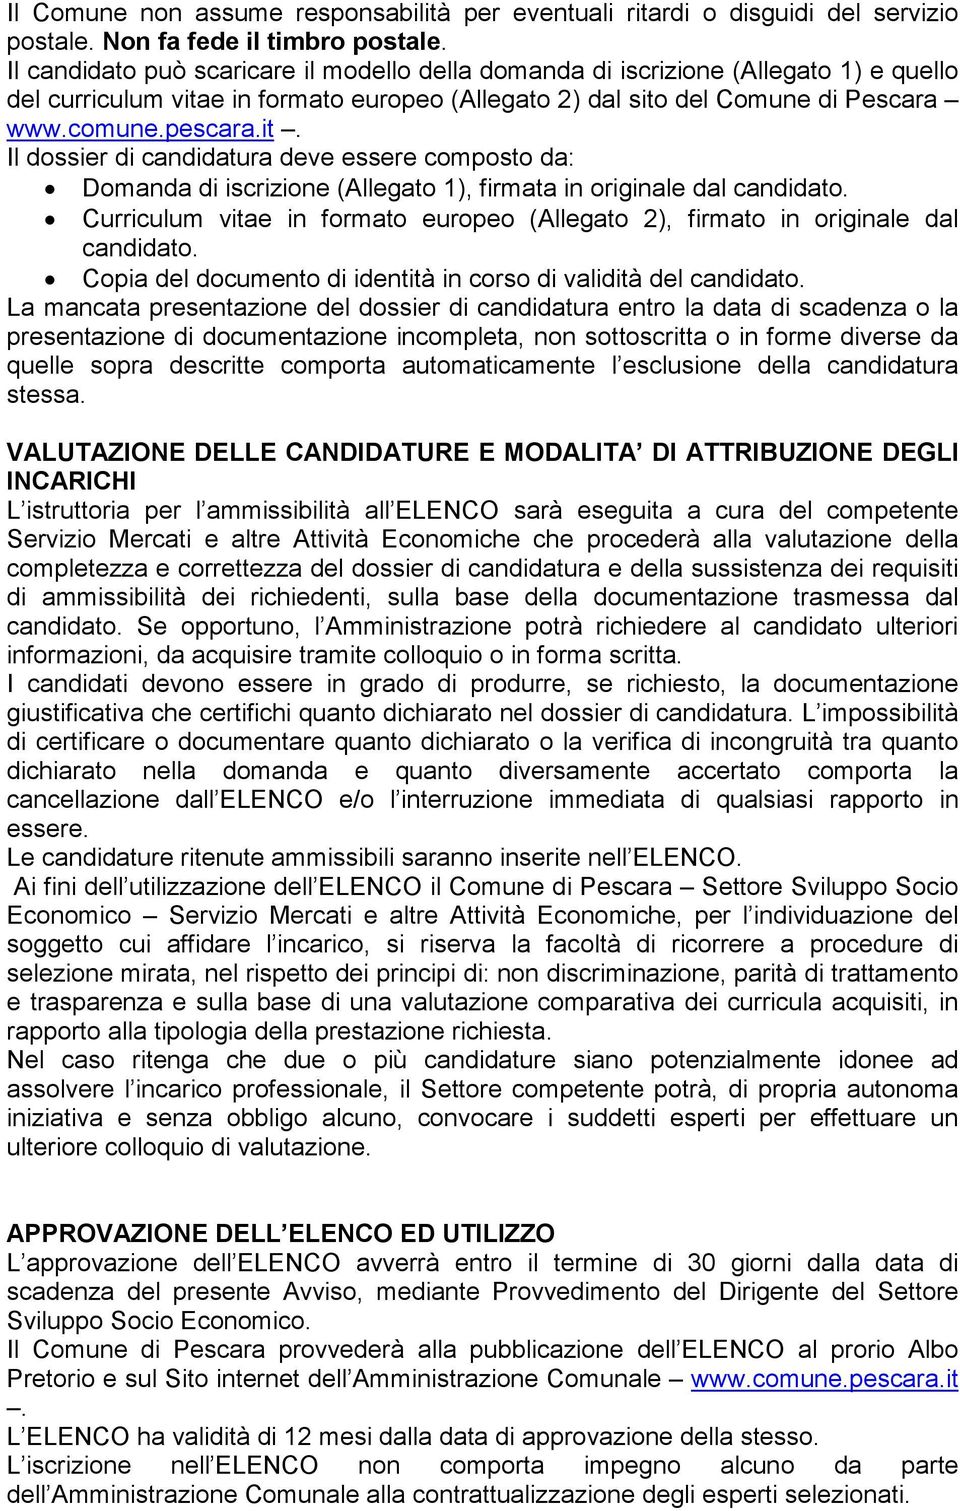 e in formato europeo (Allegato 2) dal sito del Comune di Pescara www.comune.pescara.it. Il dossier di candidatura deve essere composto da: Domanda di iscrizione (Allegato 1), firmata in originale dal candidato.